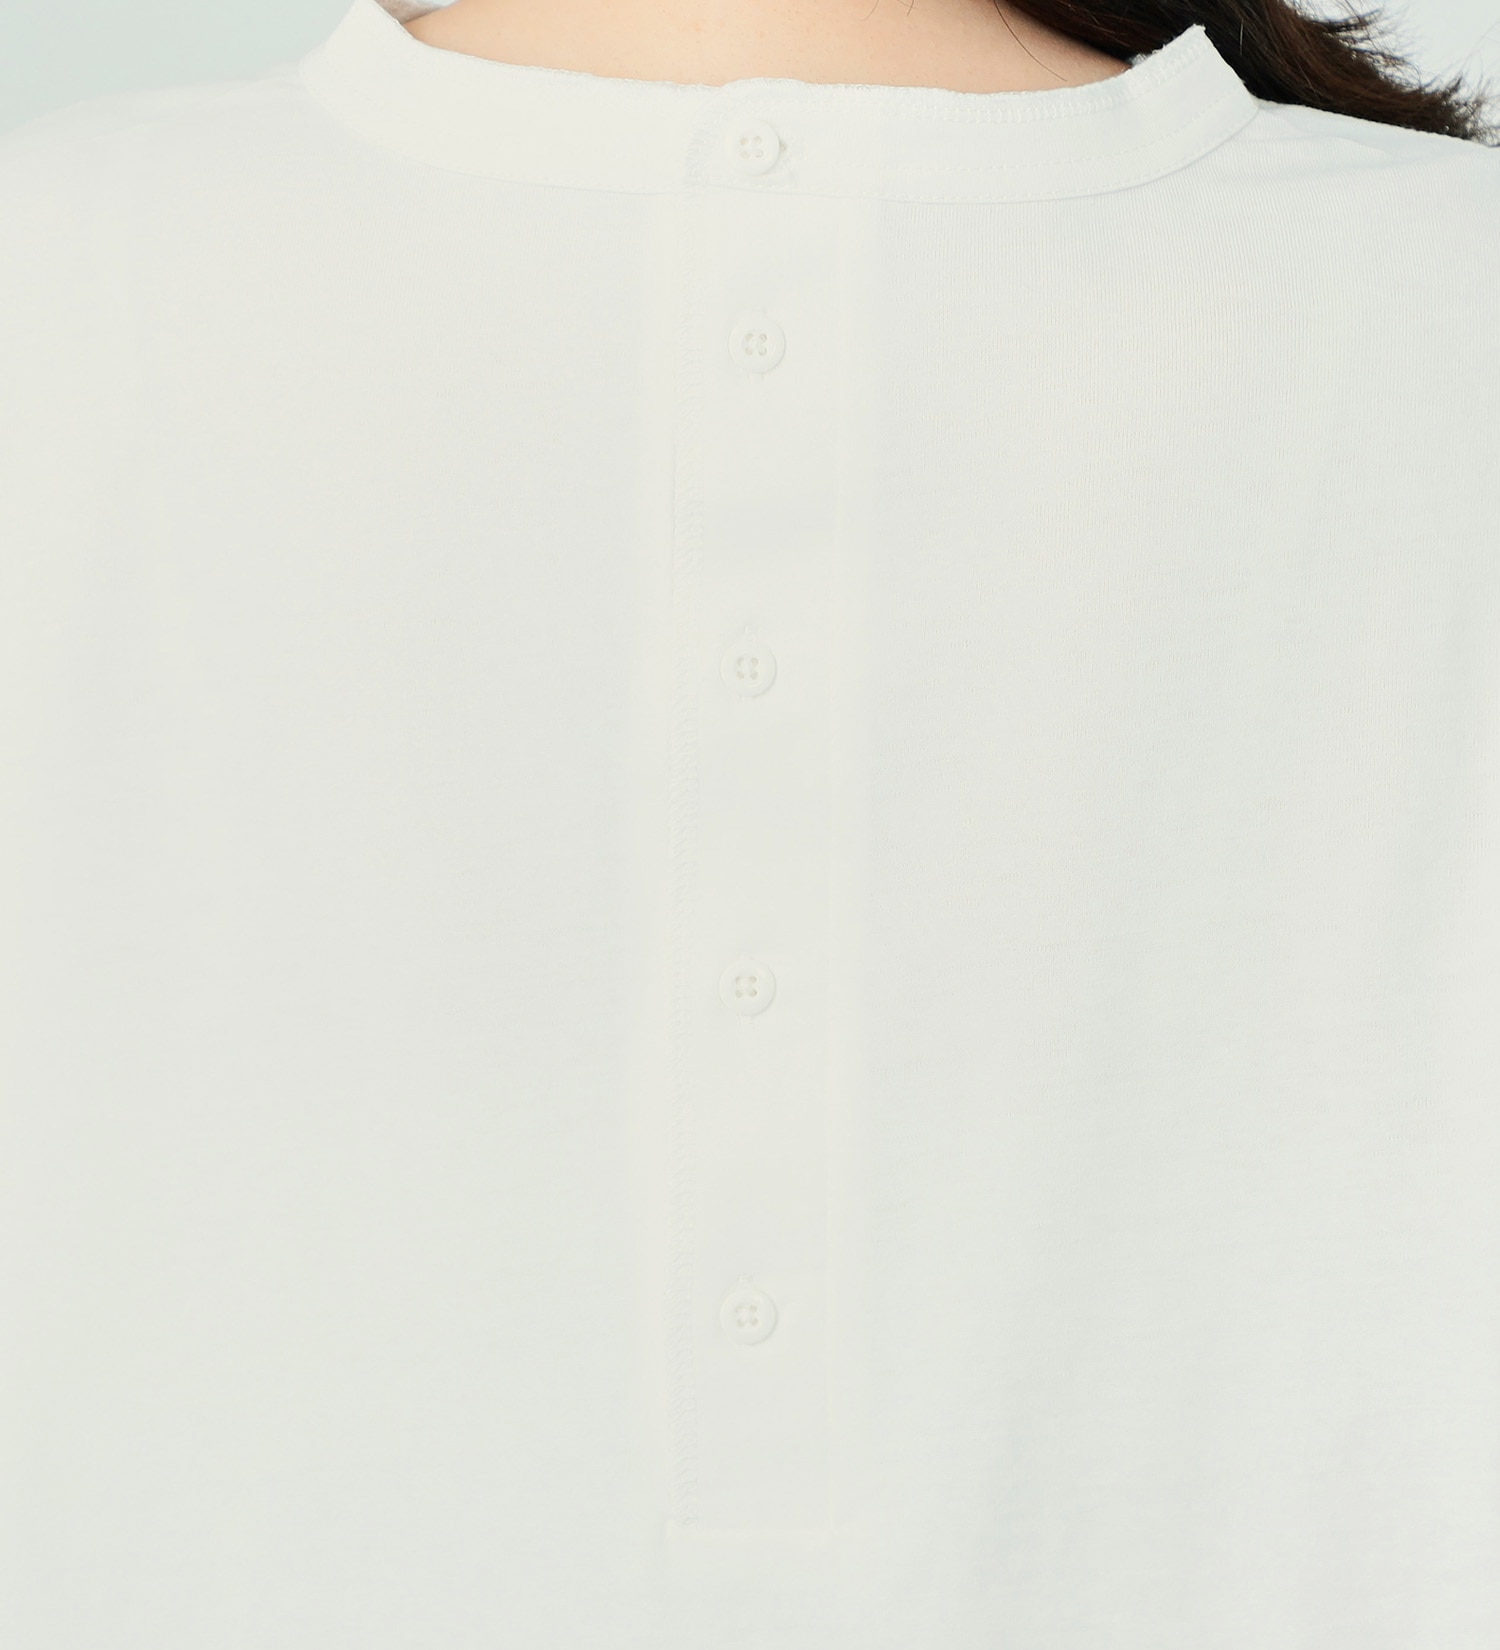 EDWIN(エドウイン)の【アウトレット店舗・WEB限定】ラウンドヘム2WAY半袖Tシャツ|トップス/Tシャツ/カットソー/レディース|オフホワイト